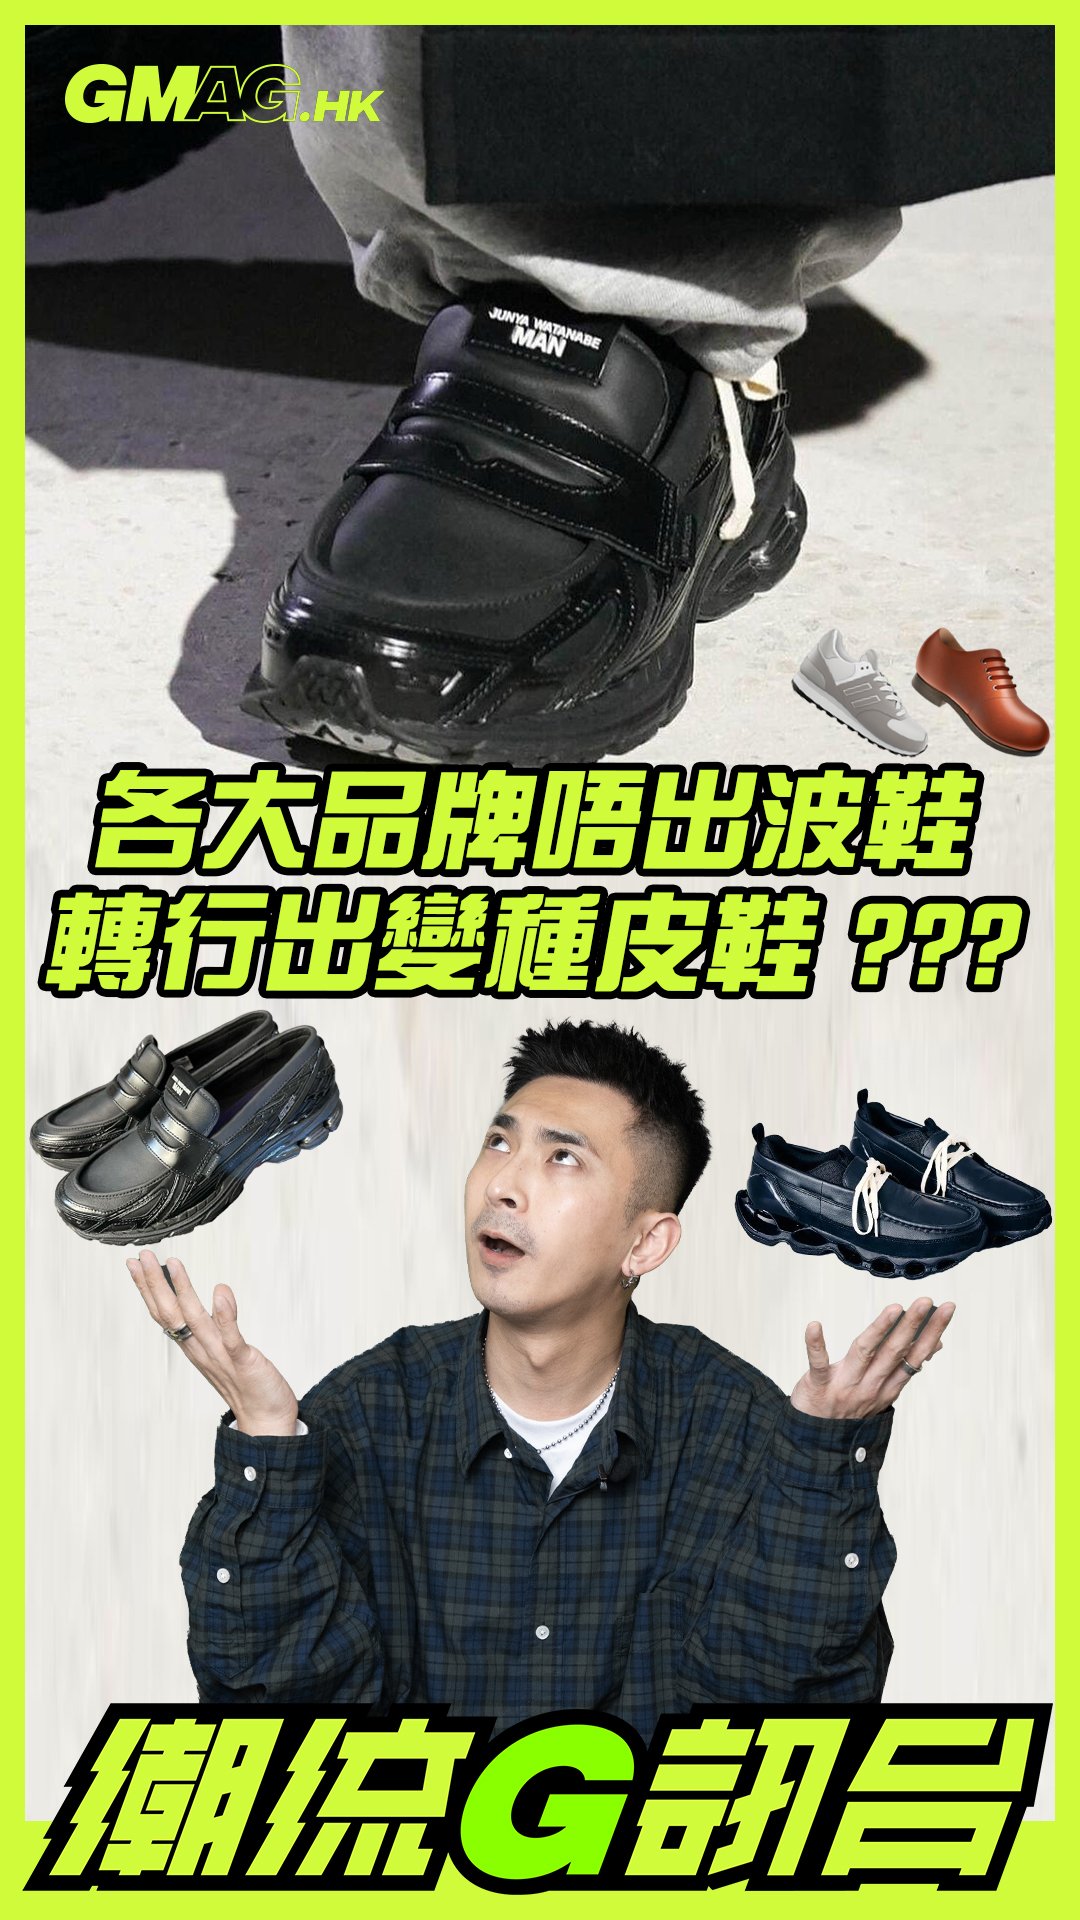 🔥《潮流G訊台》🔥 各大品牌唔出波鞋 轉行出變種皮鞋？？？